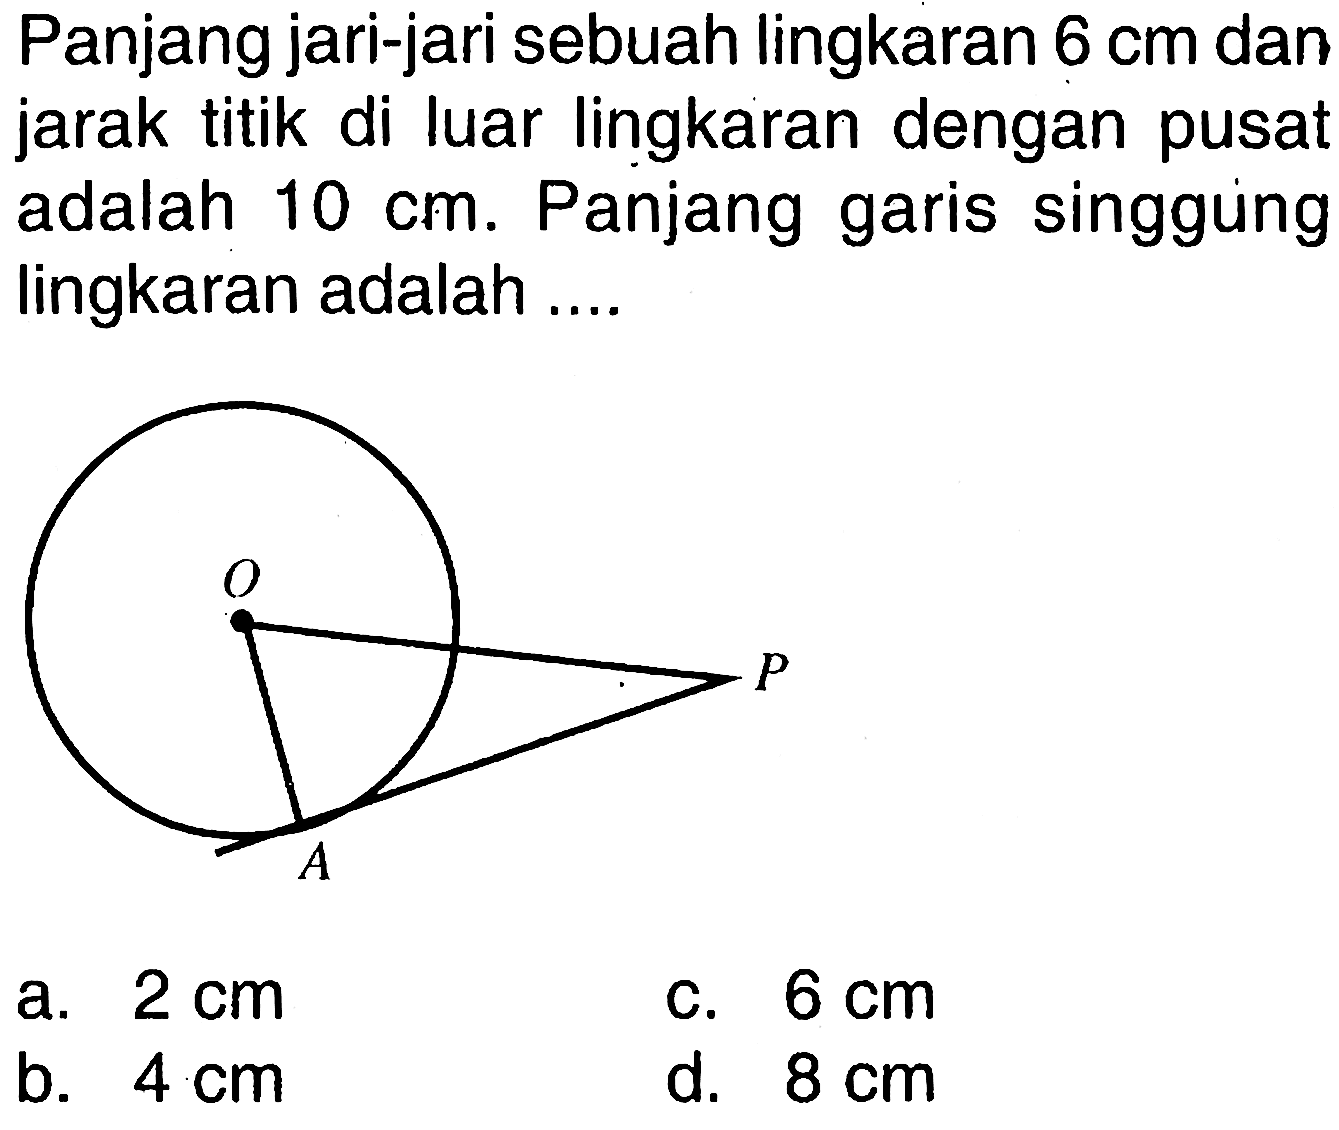 Panjang jari-jari sebuah lingkaran  6 cm  dan jarak titik di luar lingkaran dengan pusat adalah  10 cm . Panjang garis singgung lingkaran adalah ....a.  2 cm C.  6 cm b.  4 cm d.  8 cm 